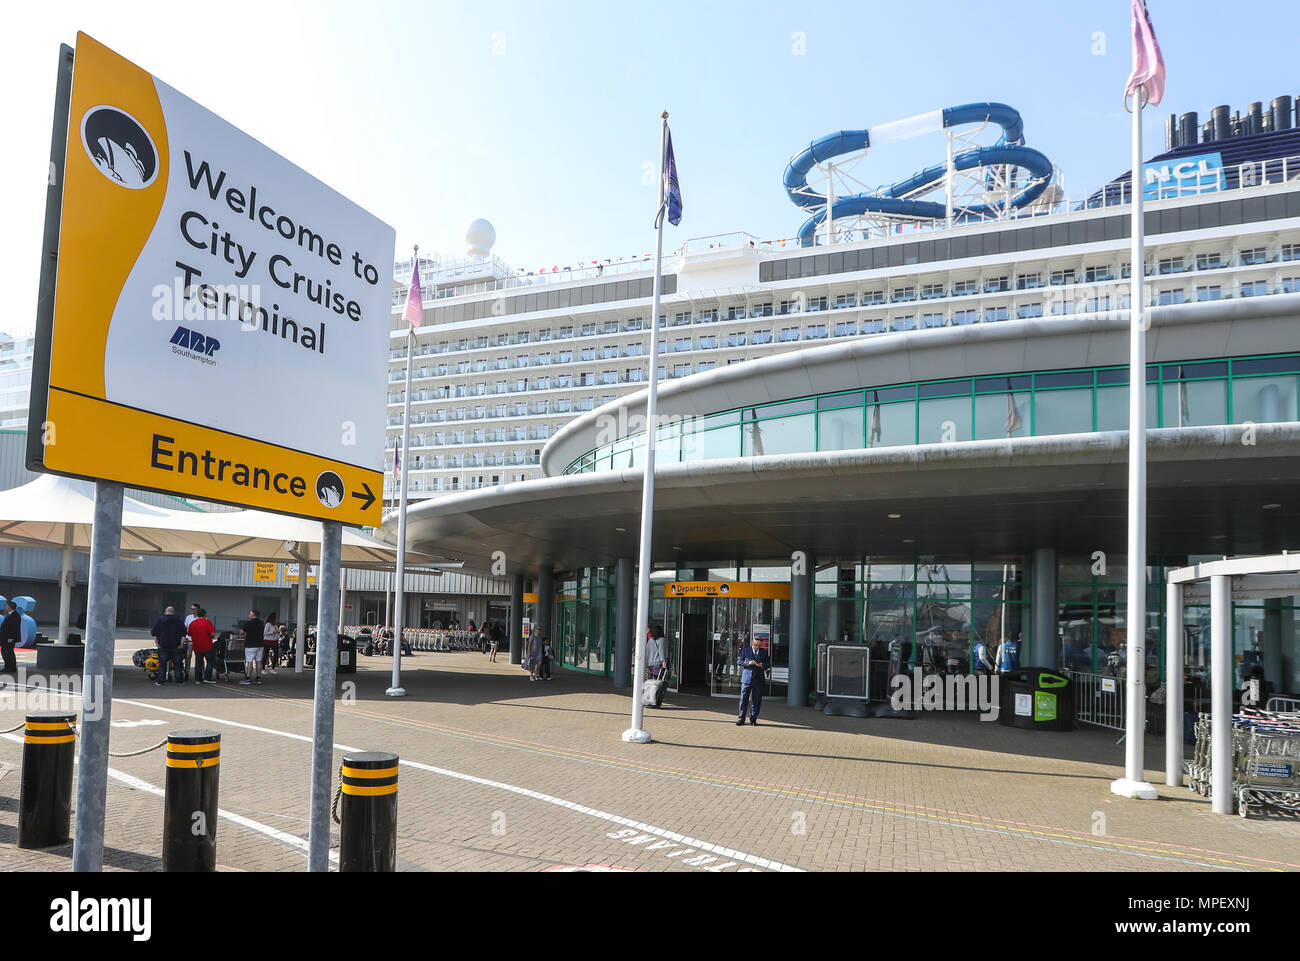 Southampton City Cruise Terminal exterior, Southampton Docks Stock Photo